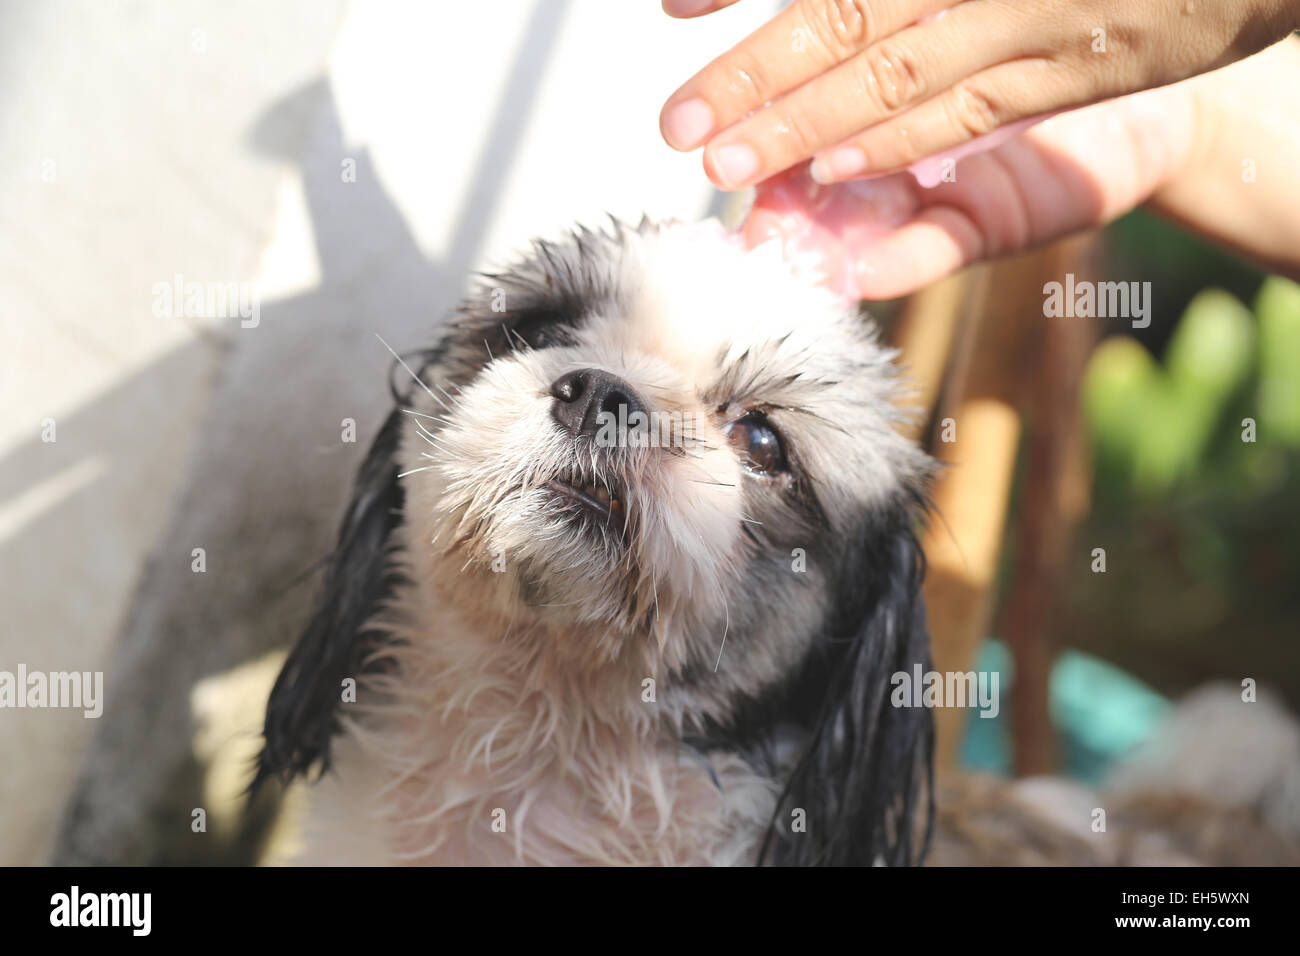 Hände, dass Reinigung Shih Tzu Hund für eine gute Gesundheit. Stockfoto